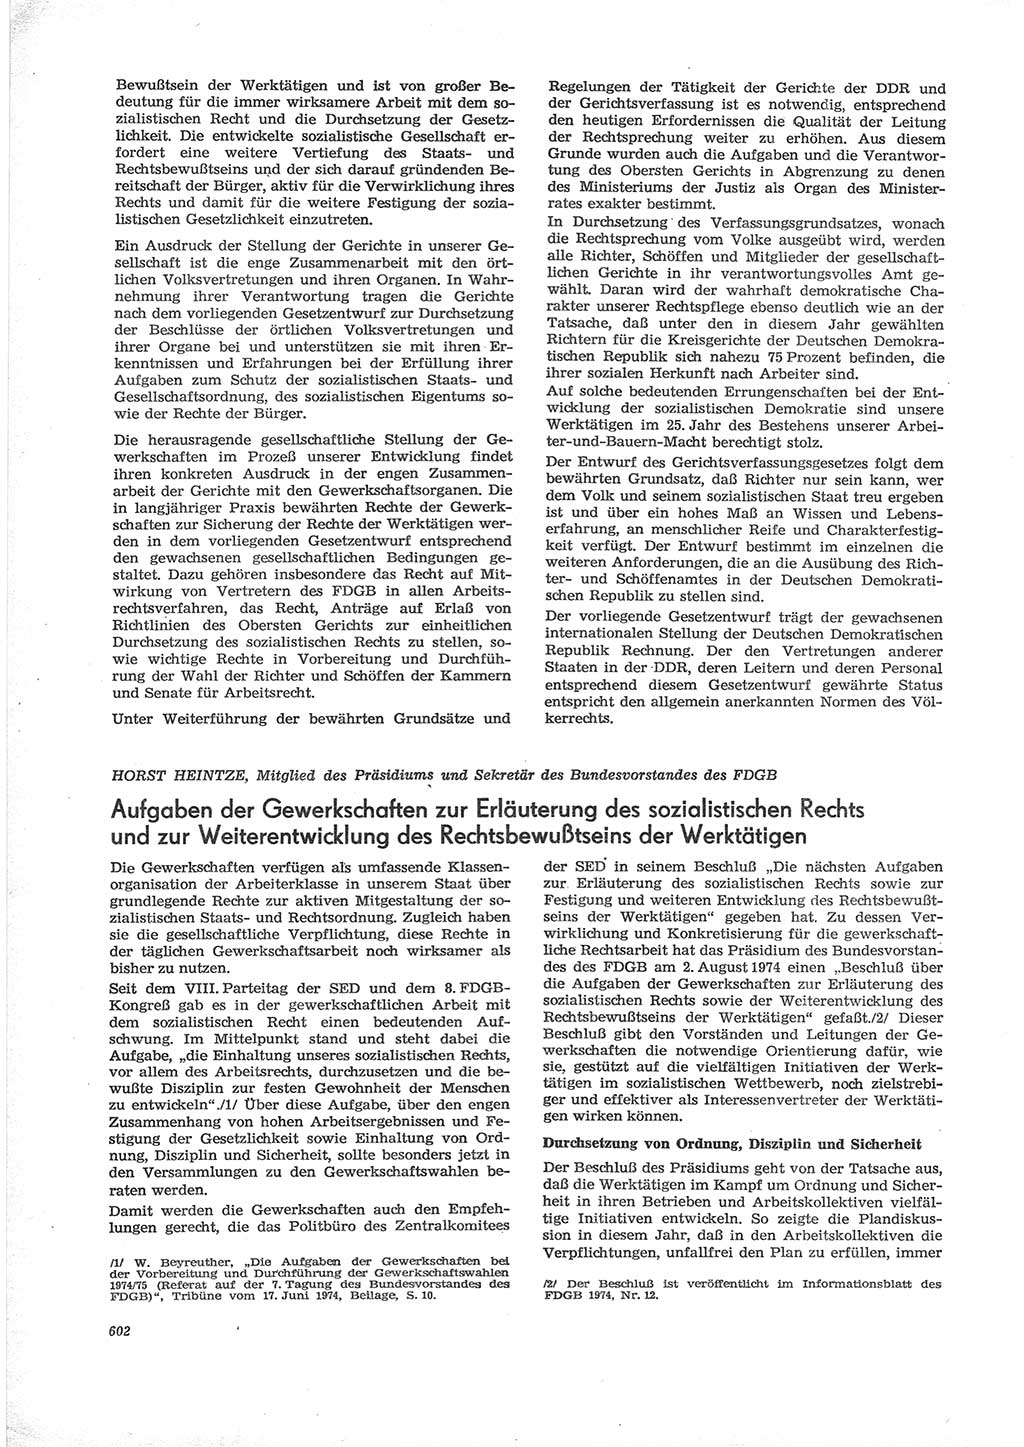 Neue Justiz (NJ), Zeitschrift für Recht und Rechtswissenschaft [Deutsche Demokratische Republik (DDR)], 28. Jahrgang 1974, Seite 602 (NJ DDR 1974, S. 602)